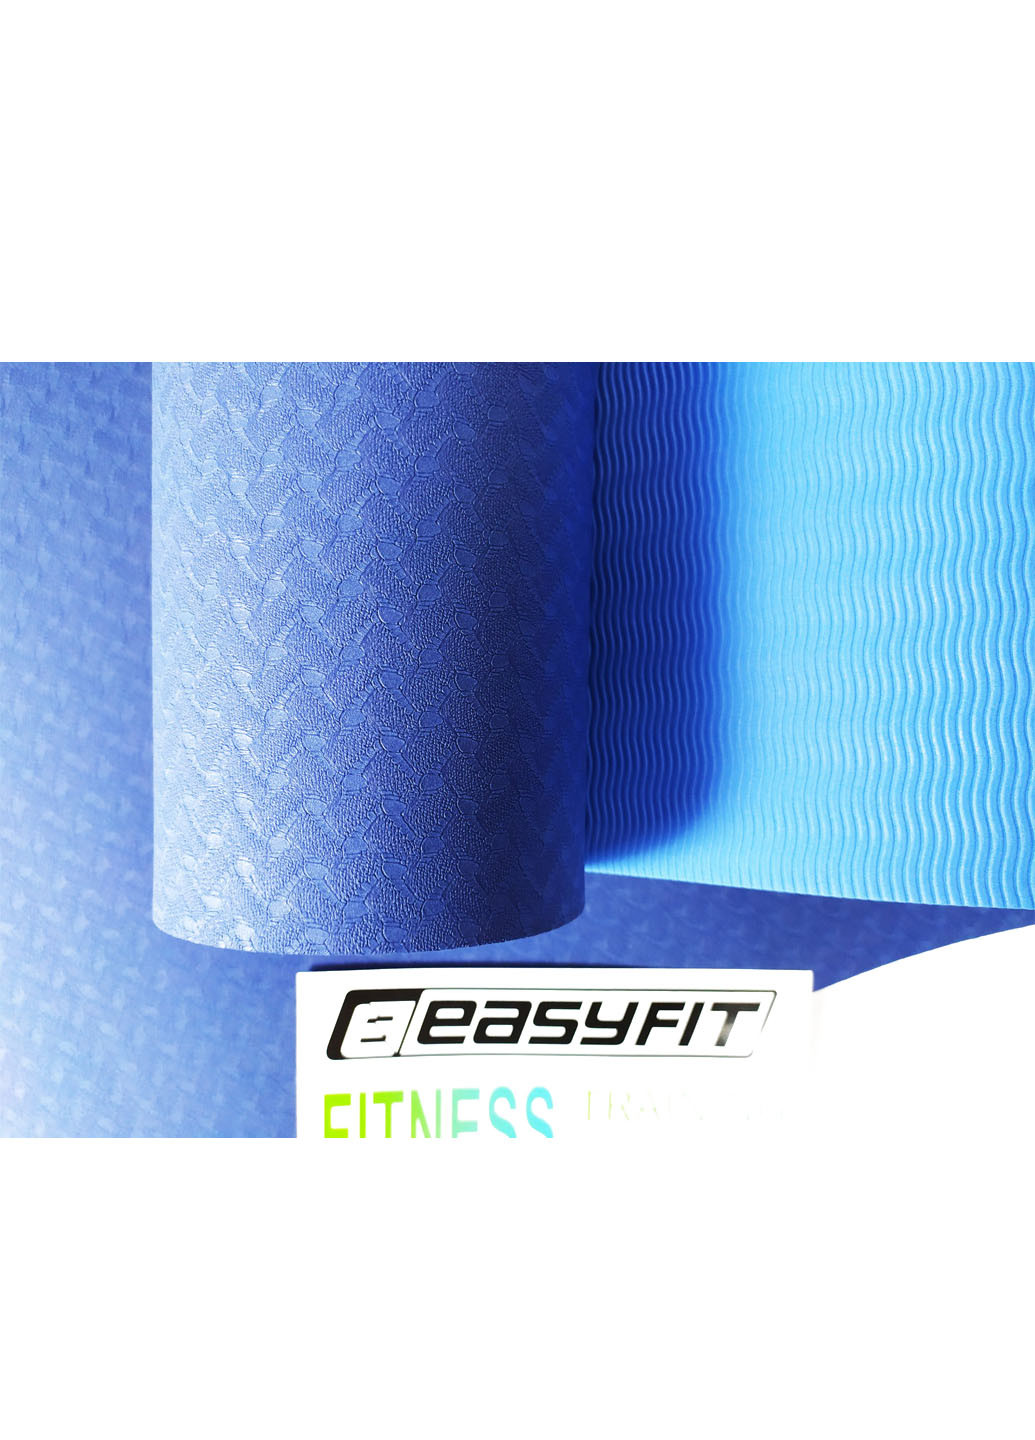 Коврик для йоги TPE+TC ECO-Friendly 8 мм синий с голубым (мат-каремат спортивный, йогамат для фитнеса, пилатеса) EasyFit (237596306)